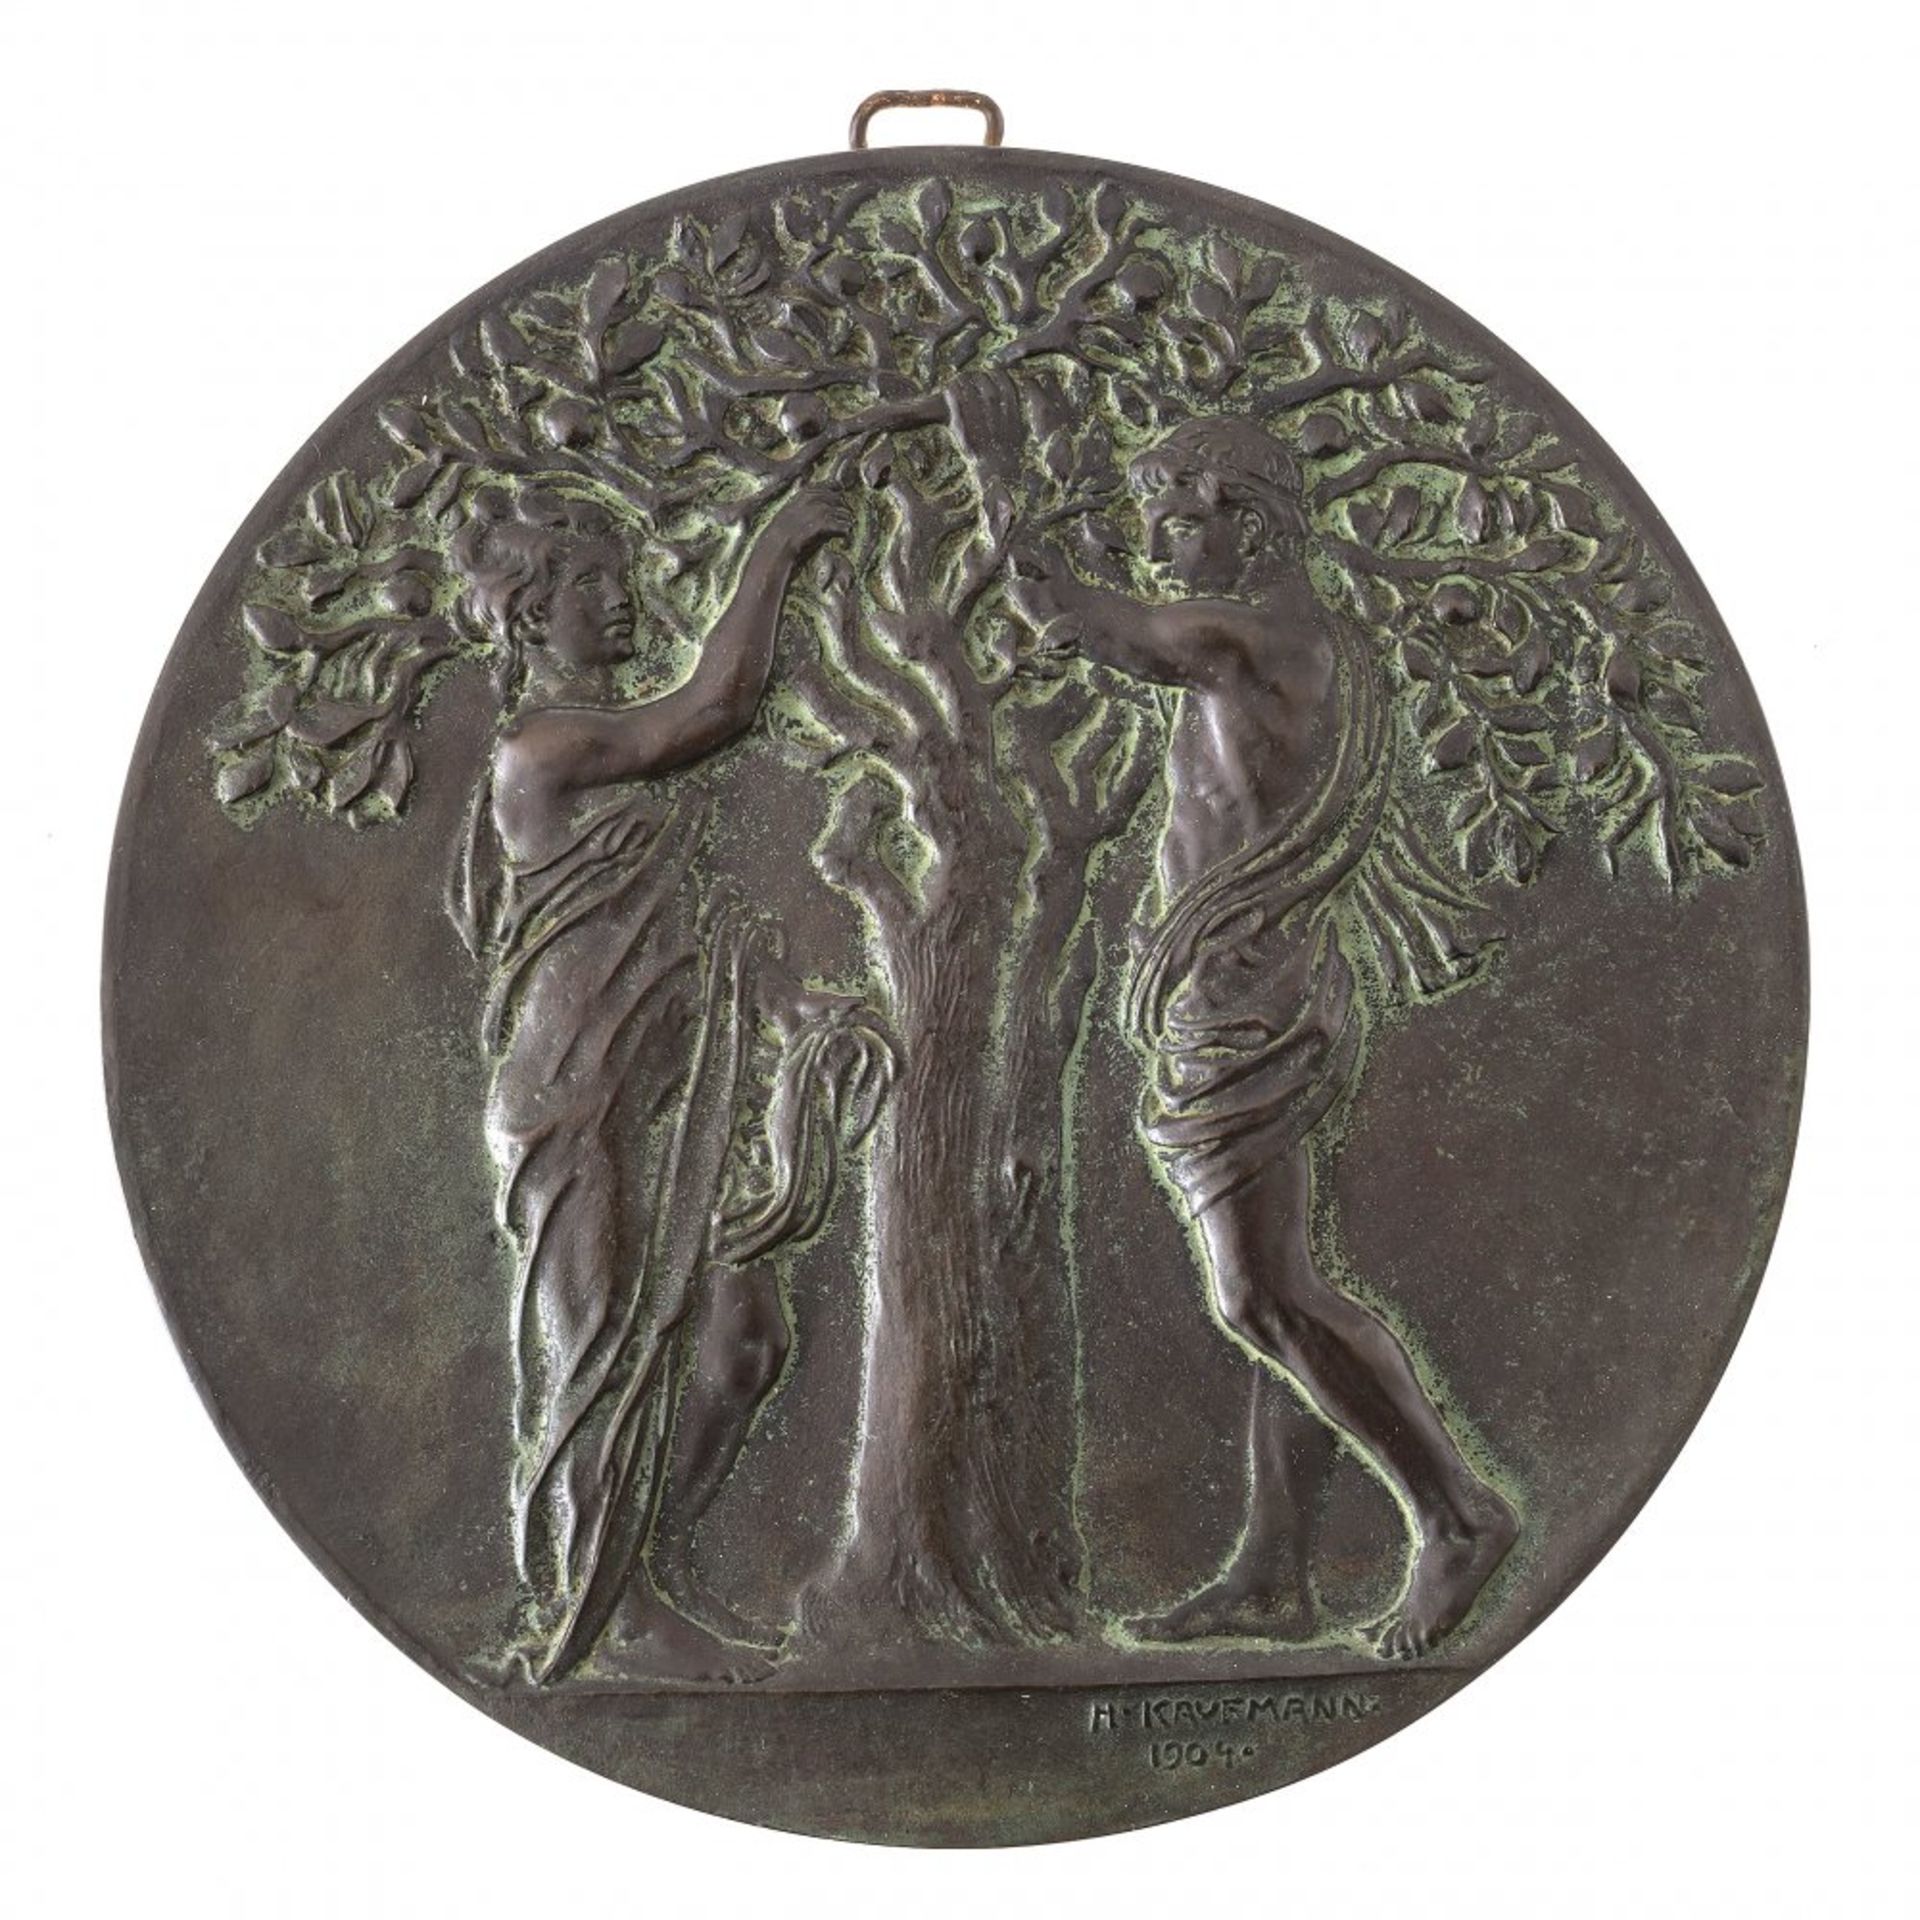 Kaufmann, HugoPlakette. Adam und Eva unter dem Apfelbaum. Bronze. Sign., dat. 1904. ø22,5 cm.